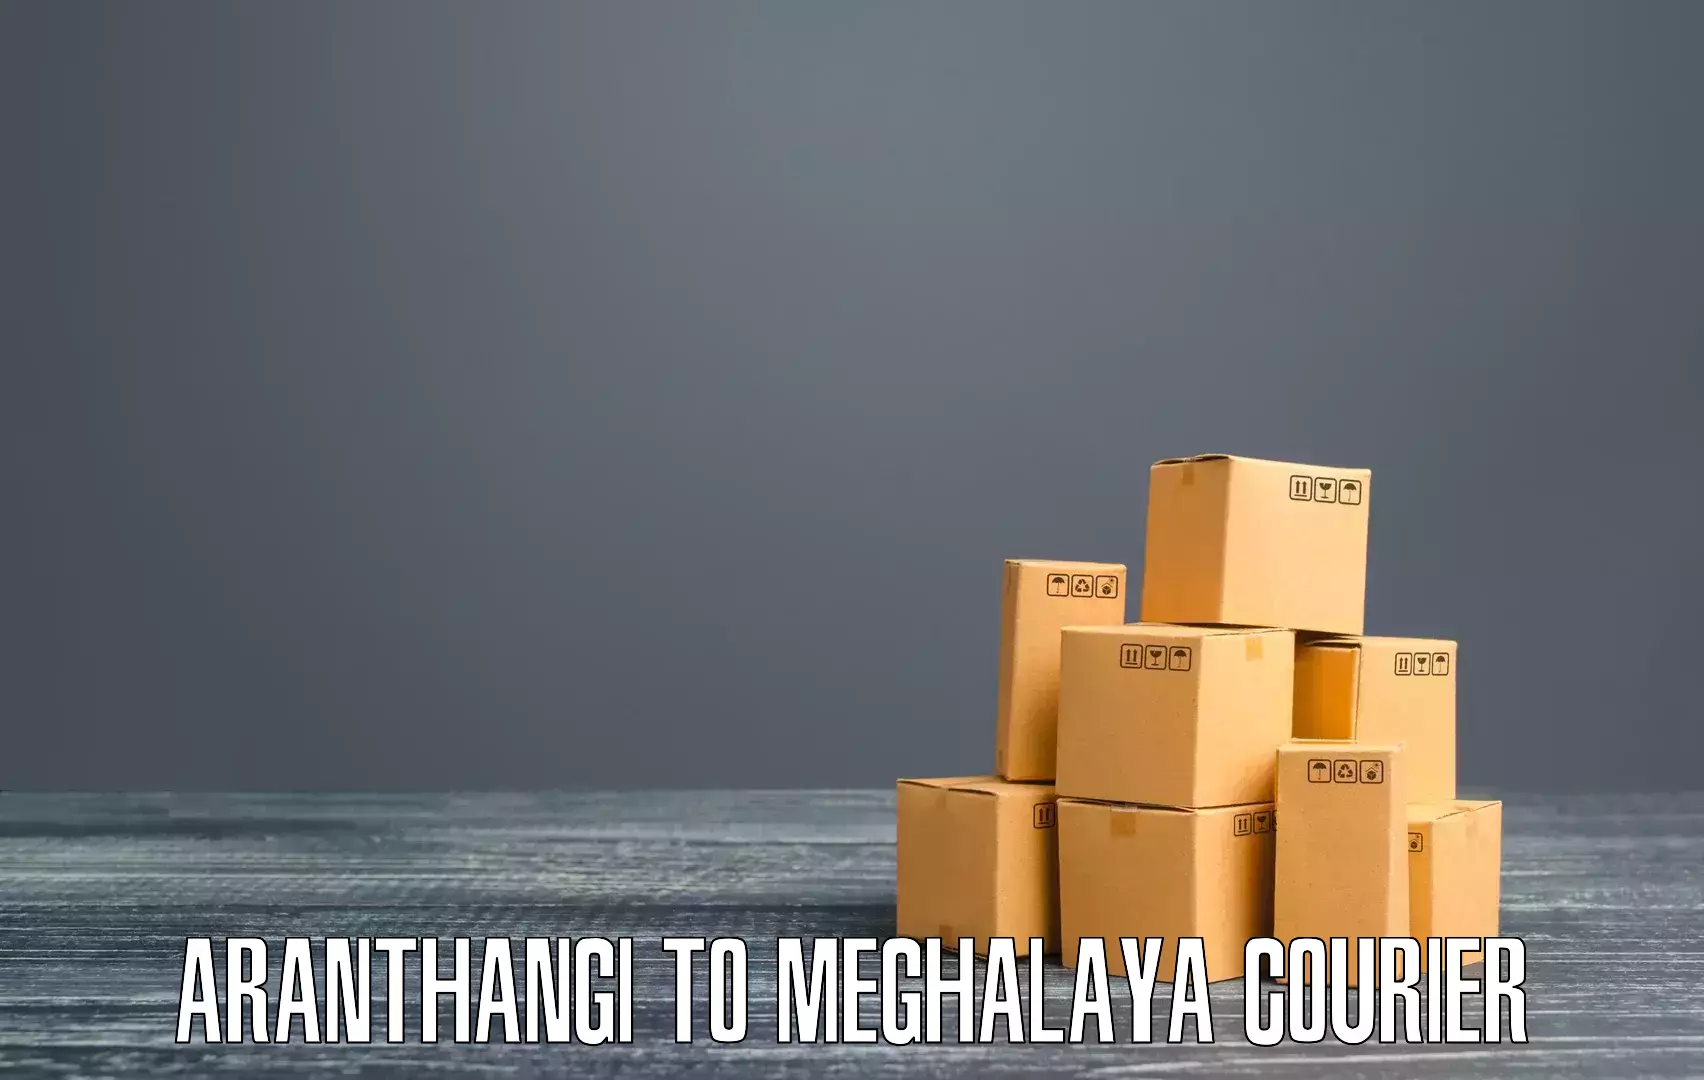 Express package transport Aranthangi to Meghalaya